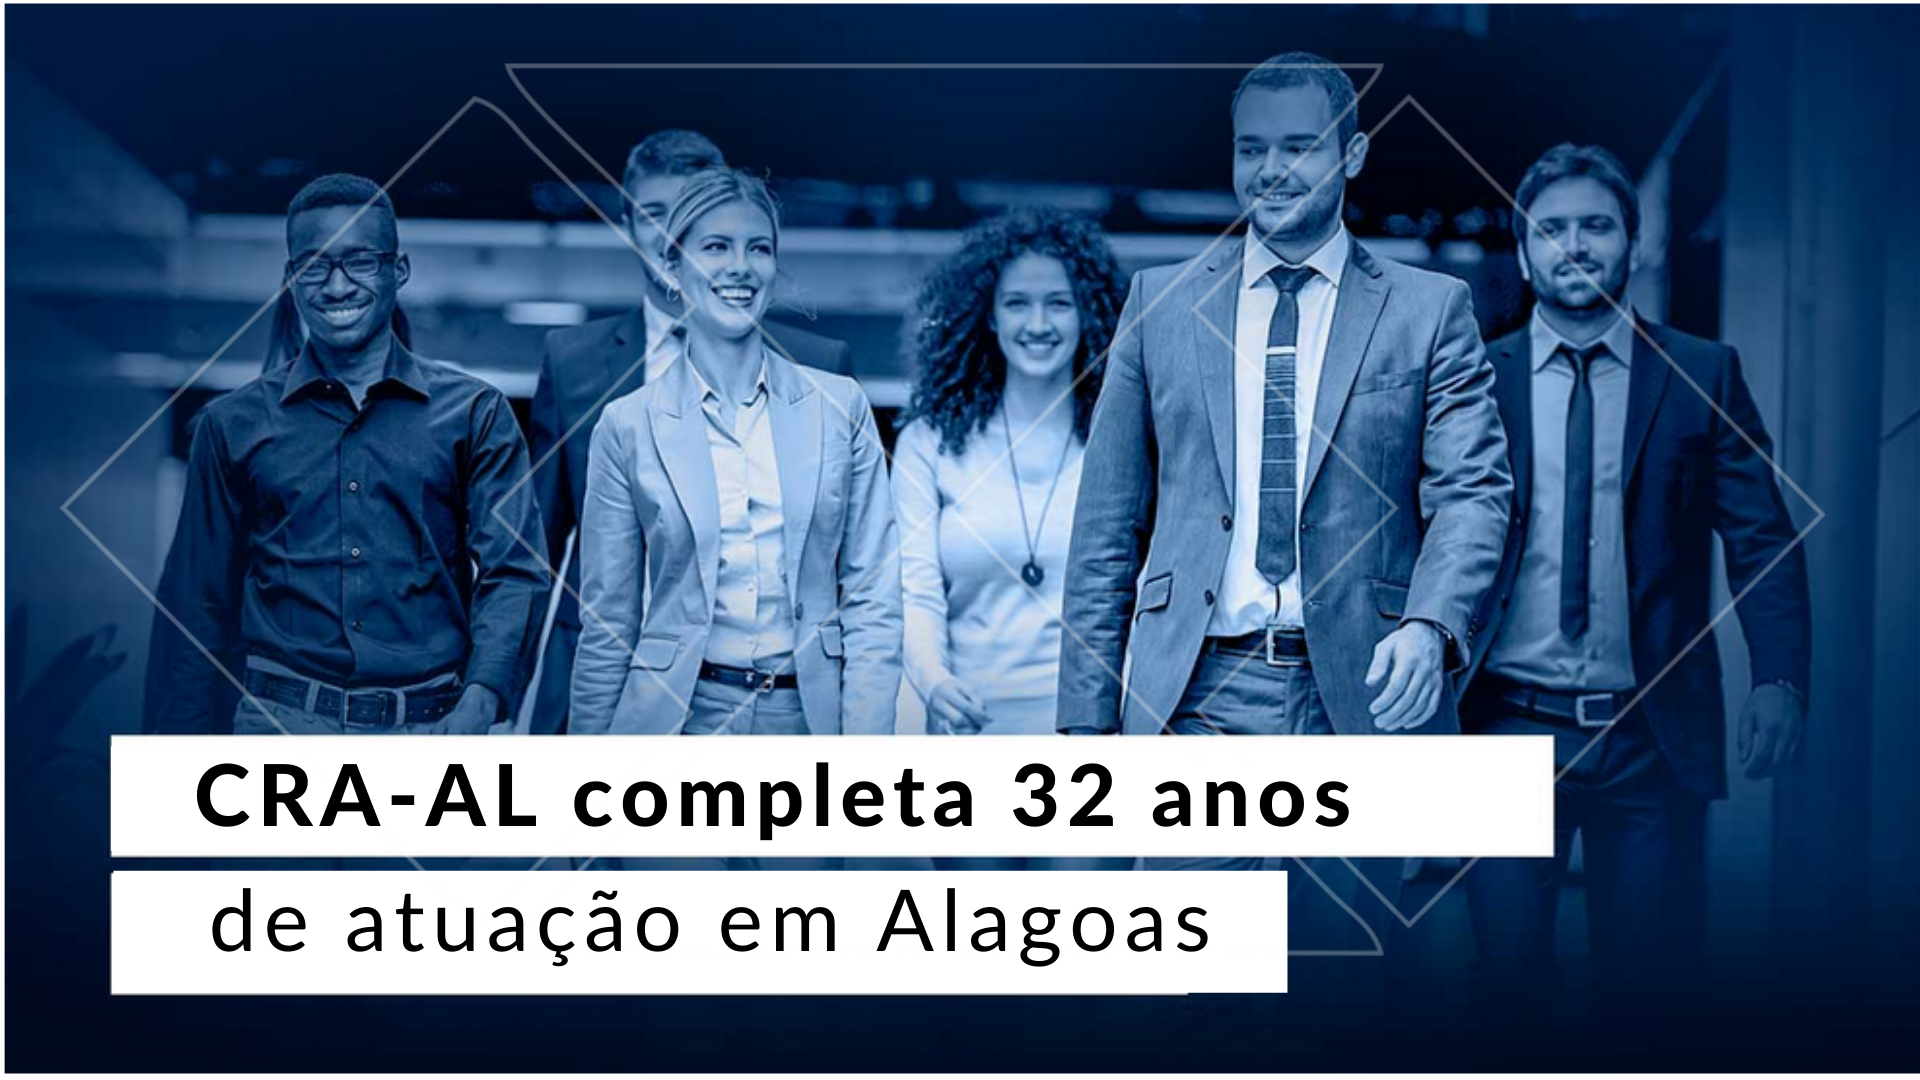 You are currently viewing CRA-AL completa 32 anos de atuação em Alagoas